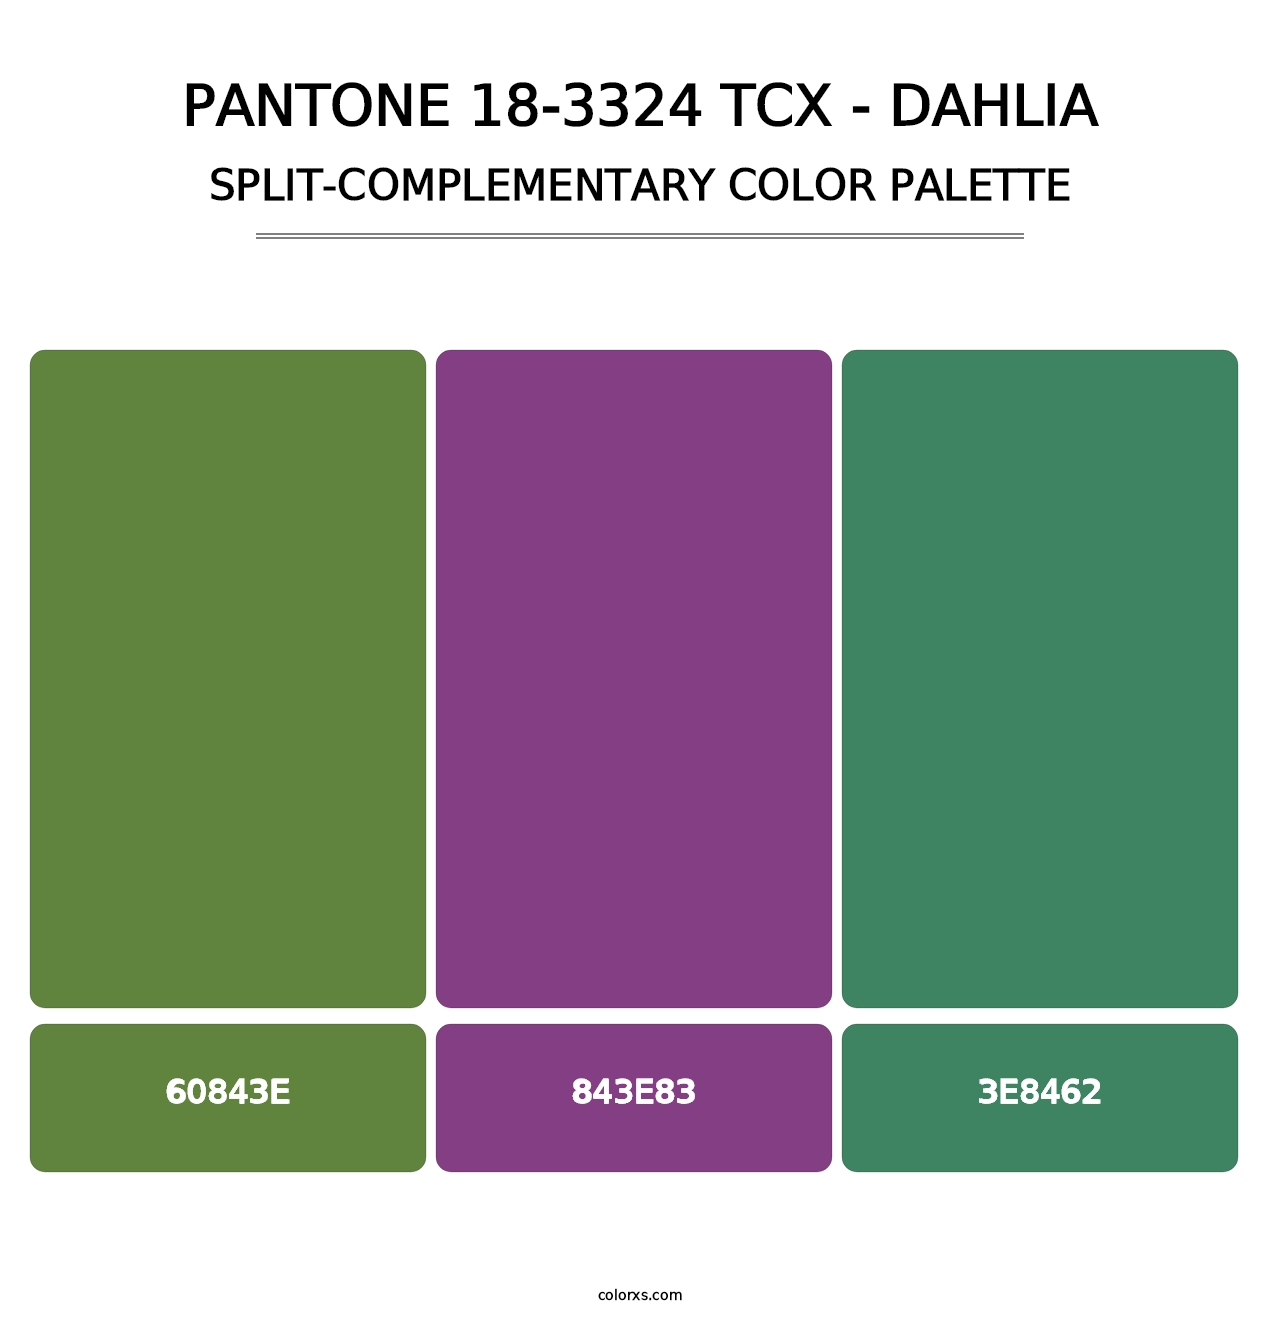 PANTONE 18-3324 TCX - Dahlia - Split-Complementary Color Palette